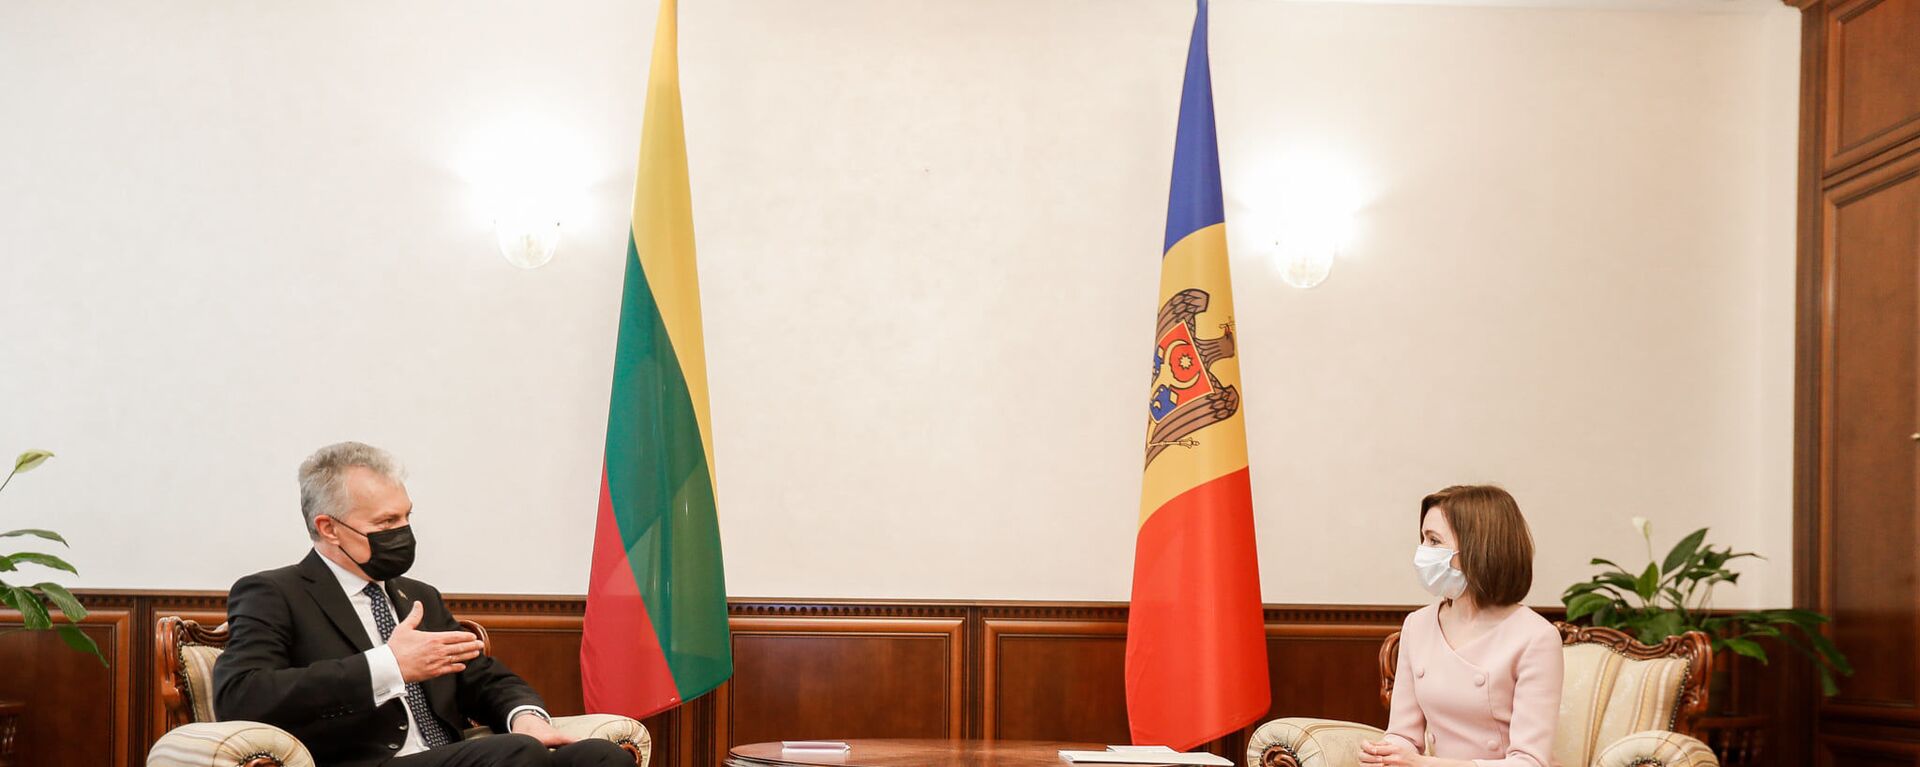 Ceremonia oficială de întâmpinare a Președintelui Republicii Lituania, dl Gitanas Nauseda, la Președinția Republicii Moldova - Sputnik Moldova, 1920, 14.05.2021